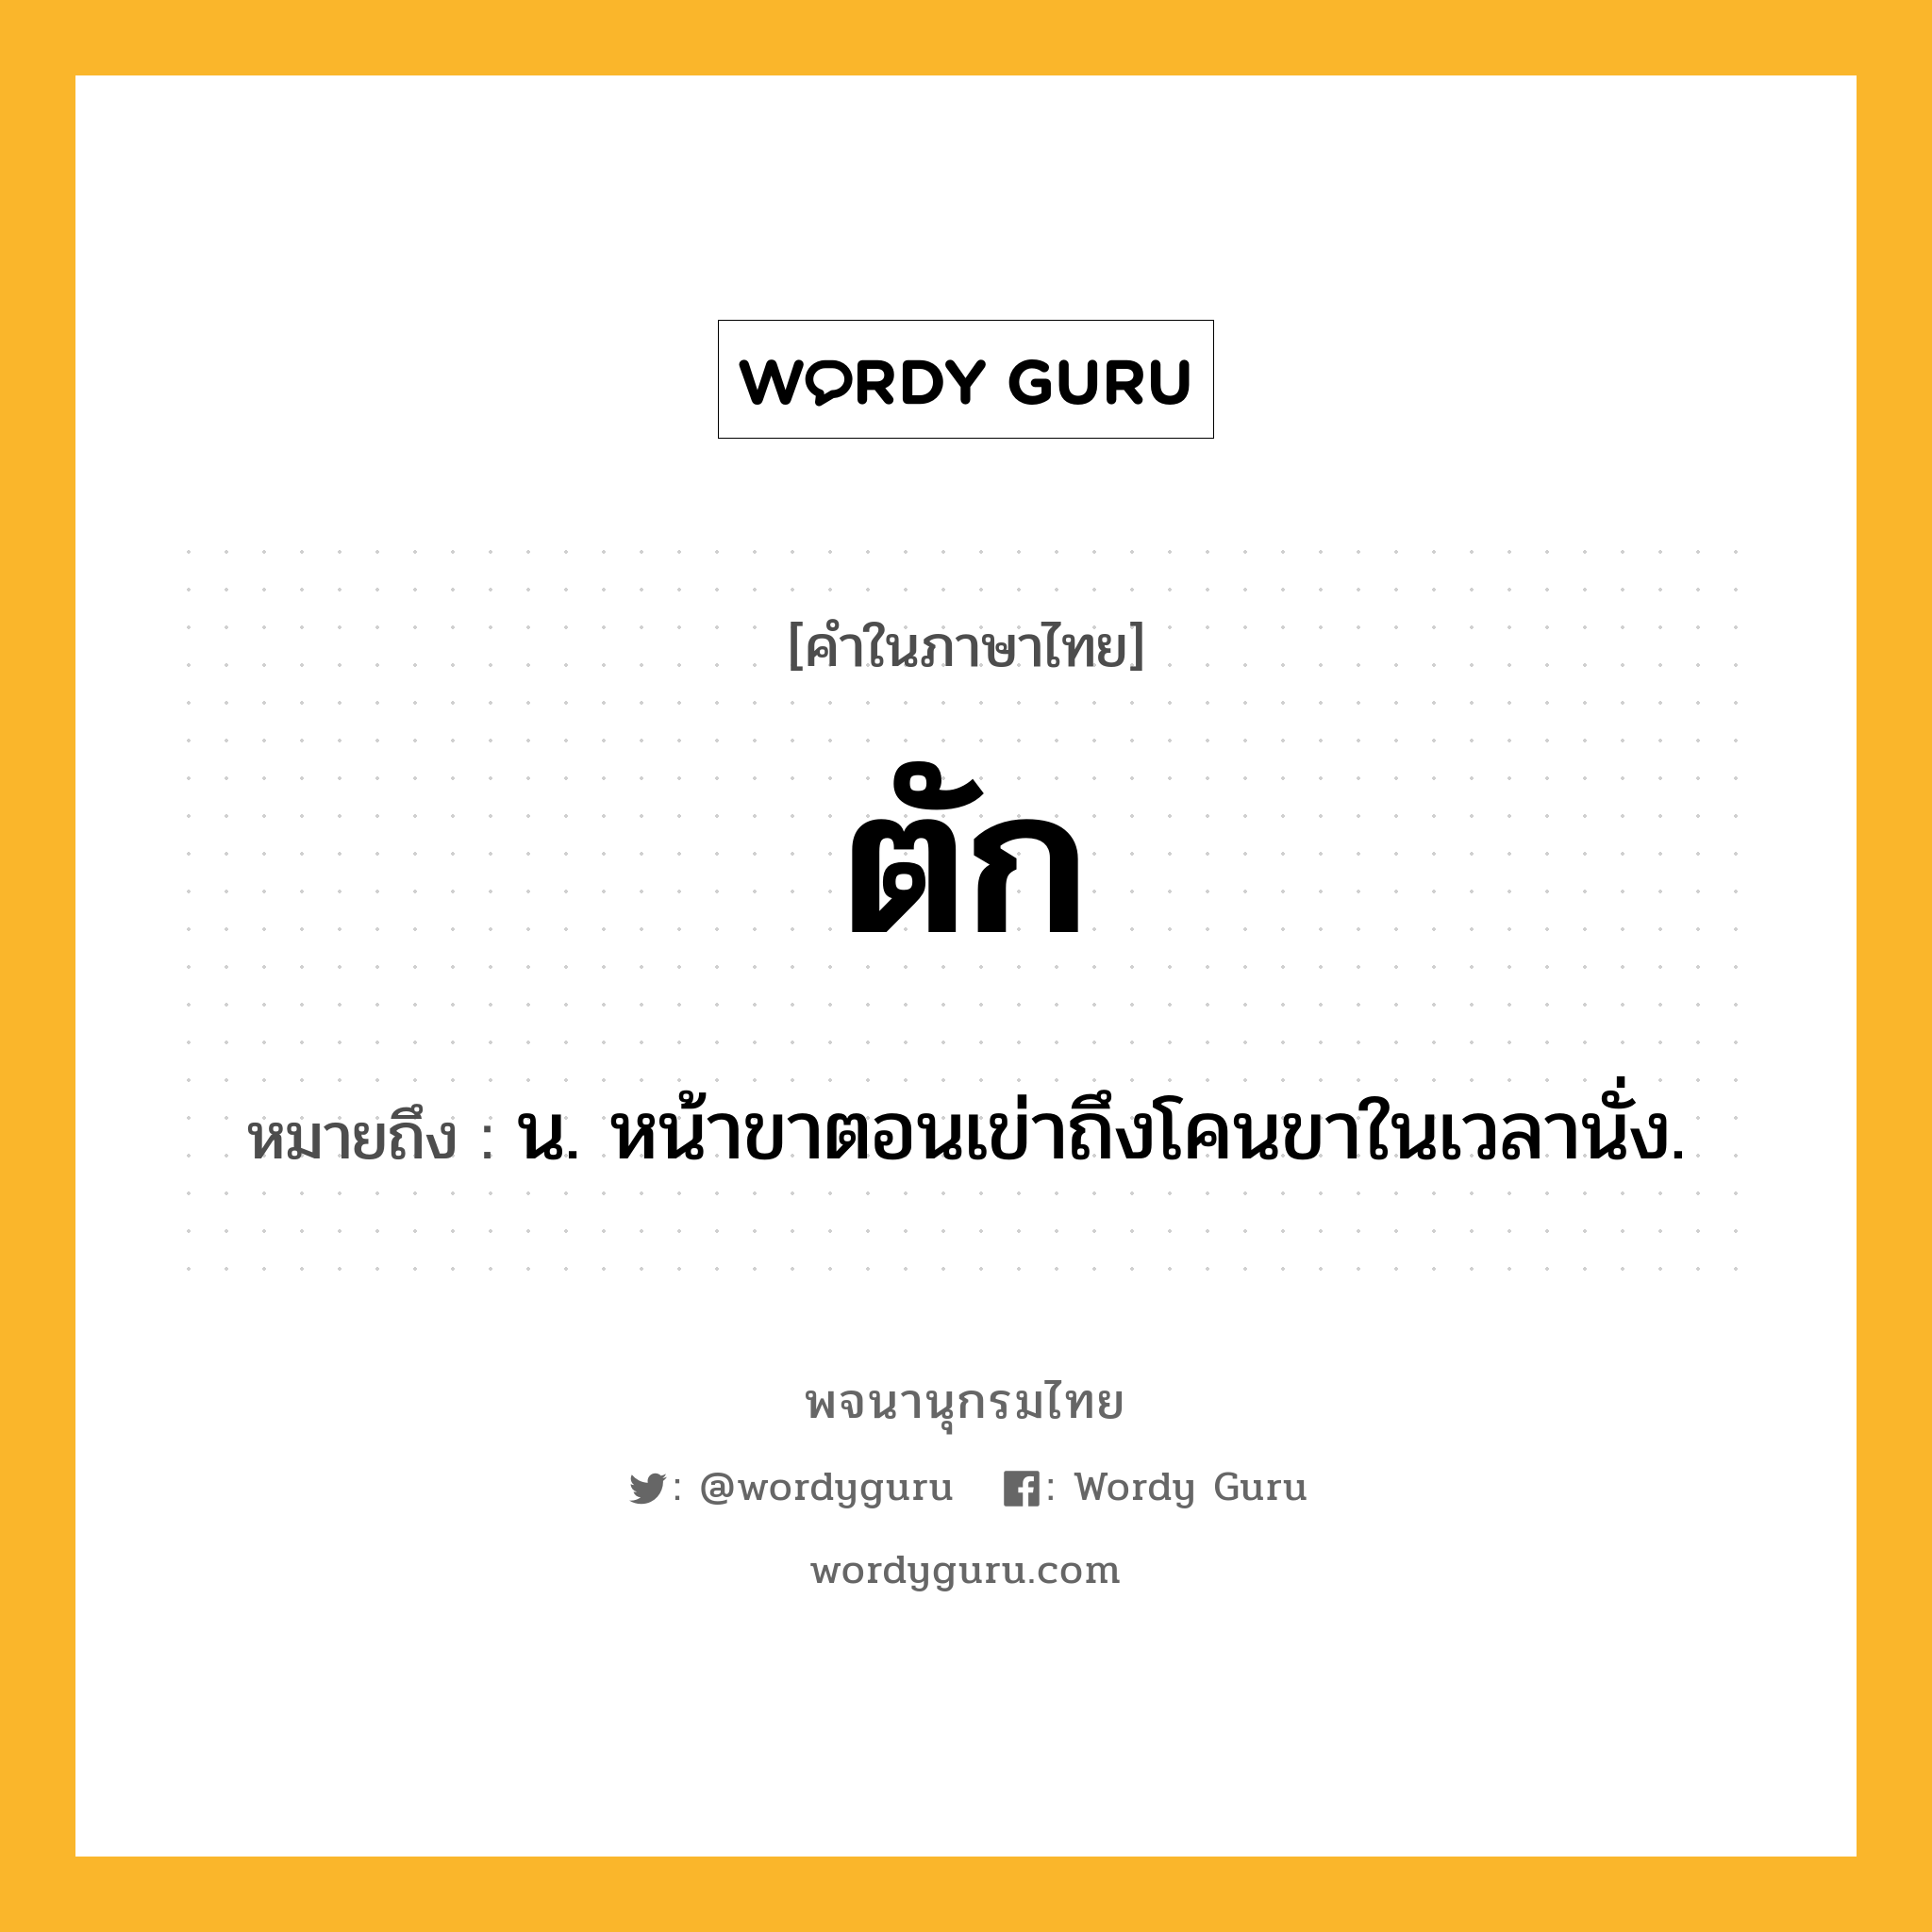 ตัก หมายถึงอะไร?, คำในภาษาไทย ตัก หมายถึง น. หน้าขาตอนเข่าถึงโคนขาในเวลานั่ง.